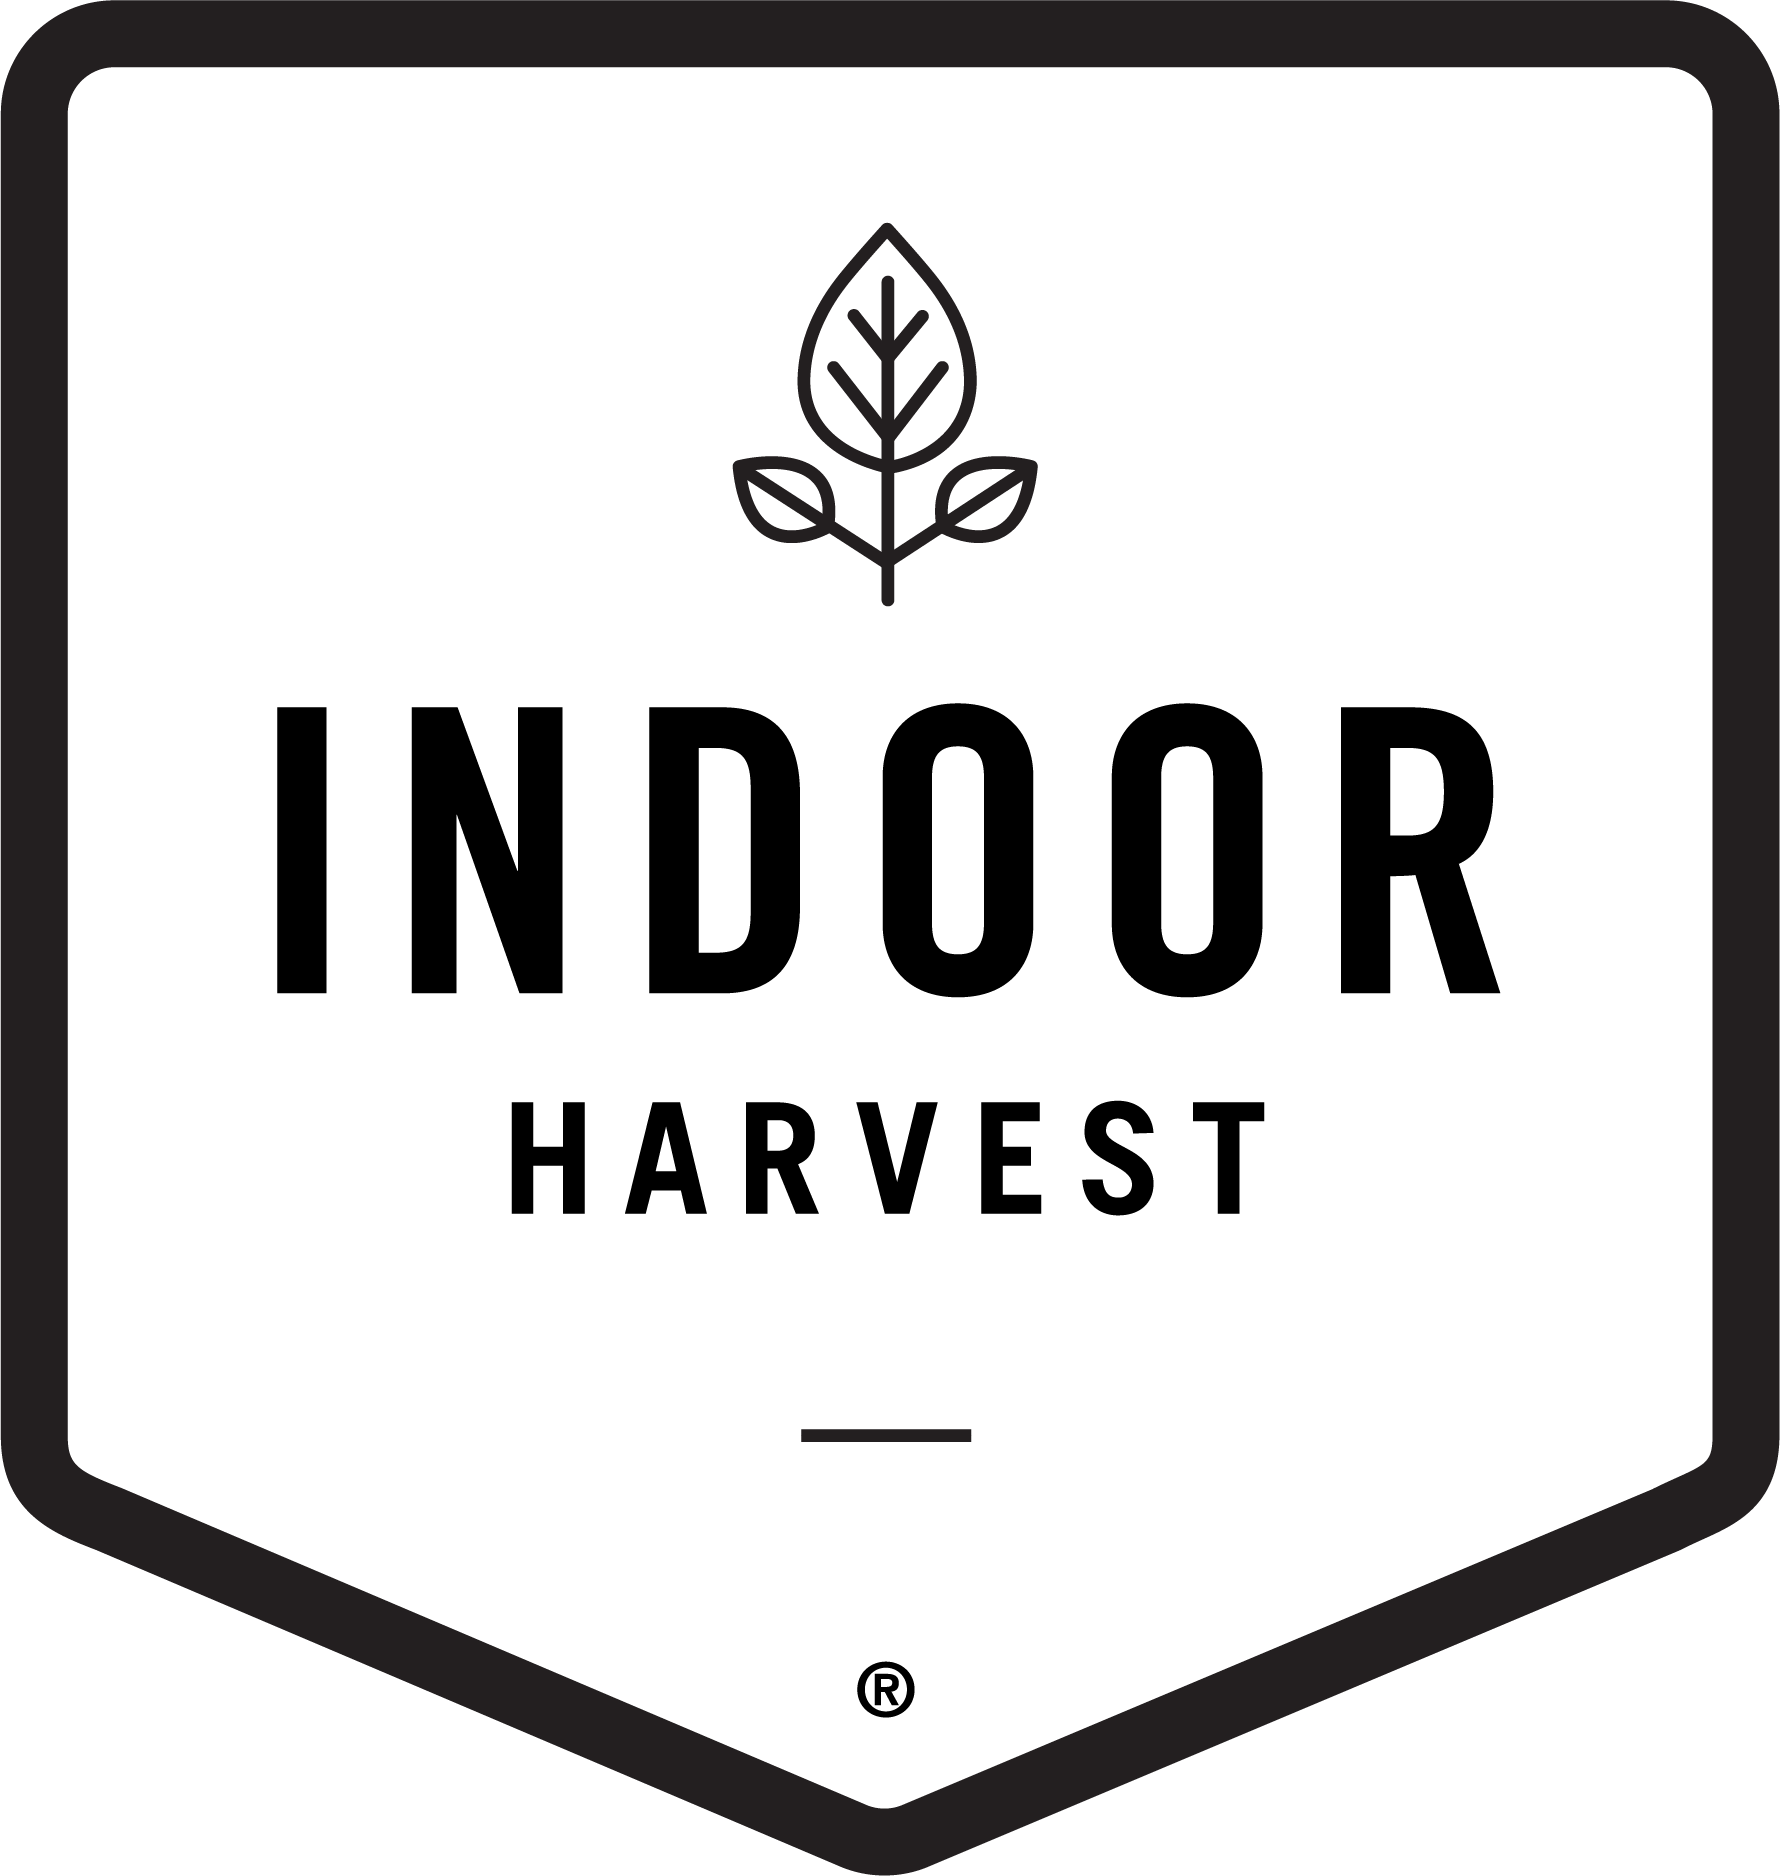 Indoor Harvest Corp